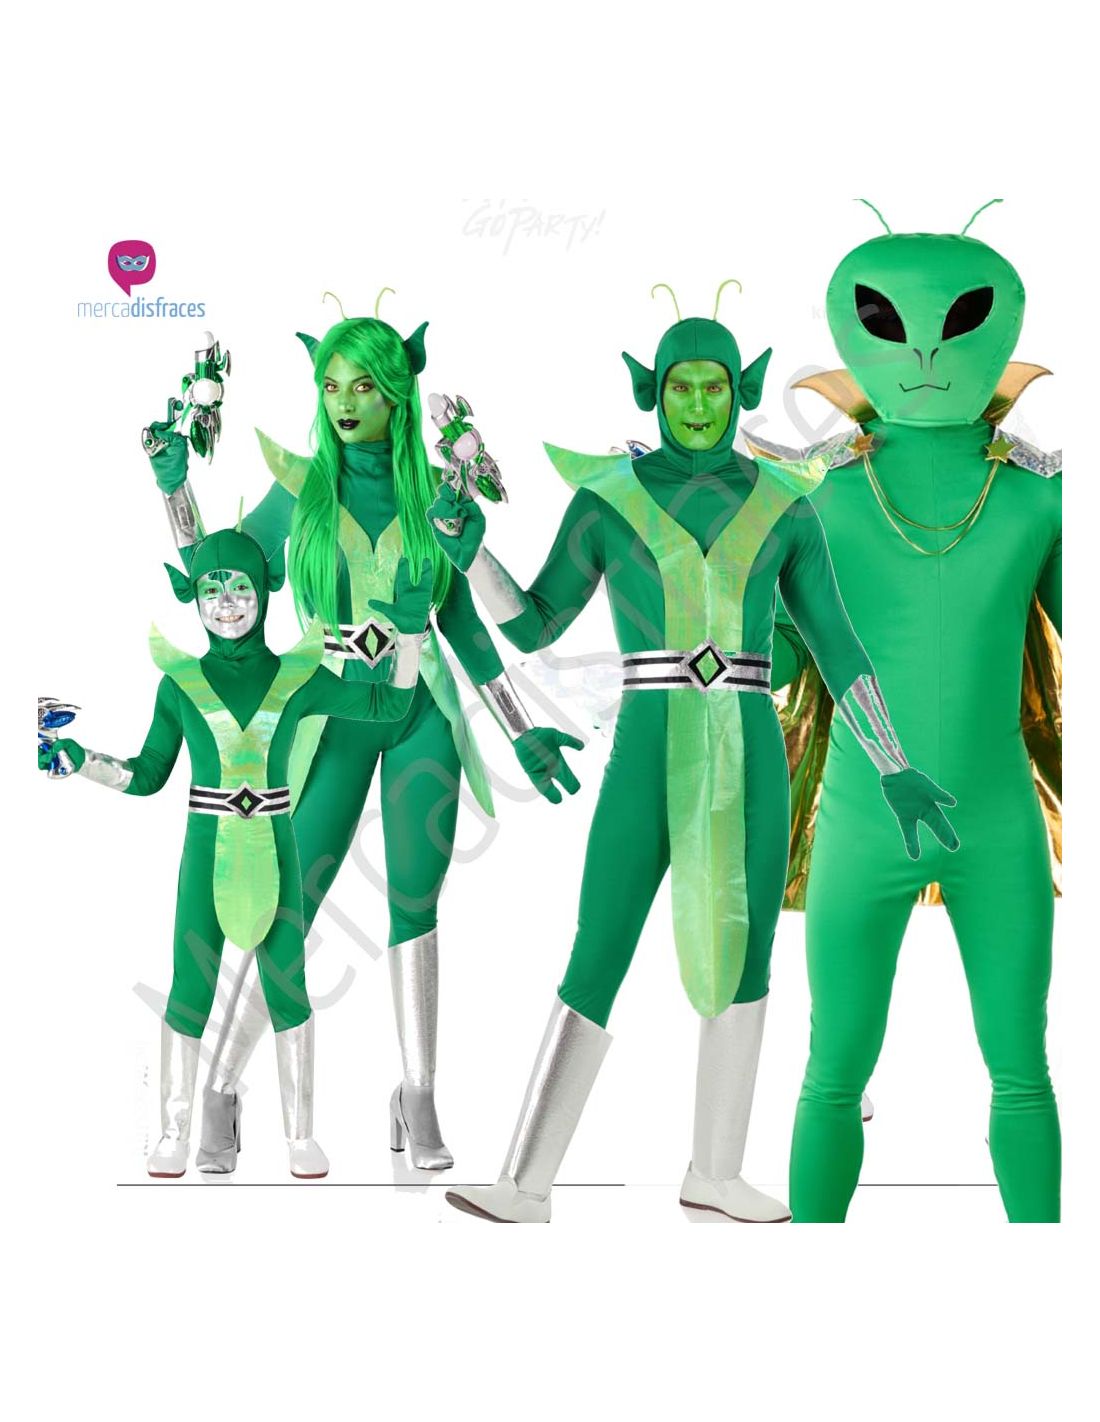 Disfraz Alien o Extraterrestre para Niños